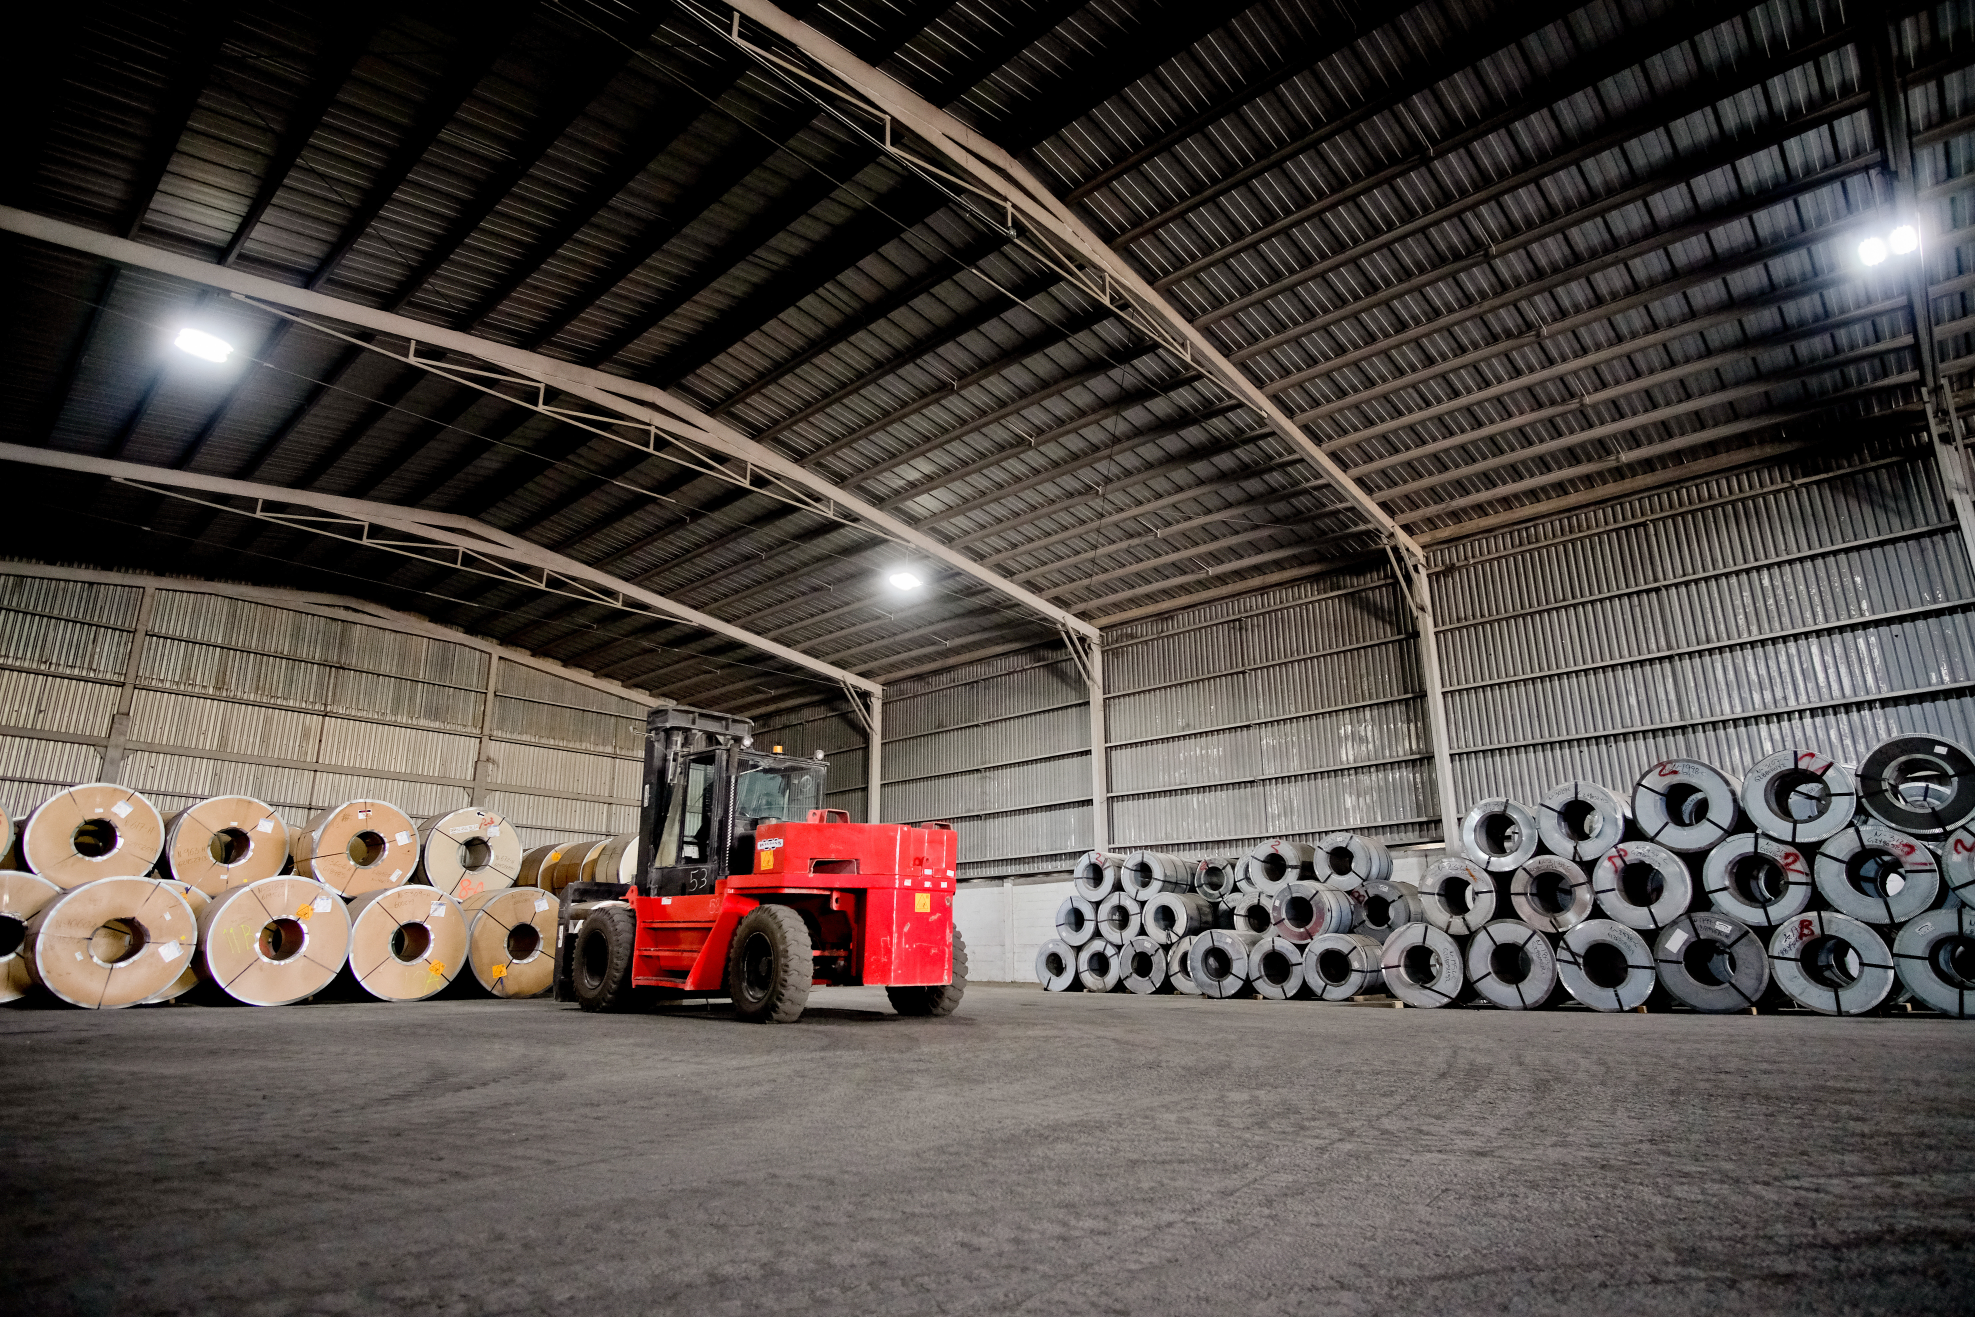 Áreas de trabajo en donde se almacéna, carga y descarga producto. Maquinaria especializada para mover material pesado.